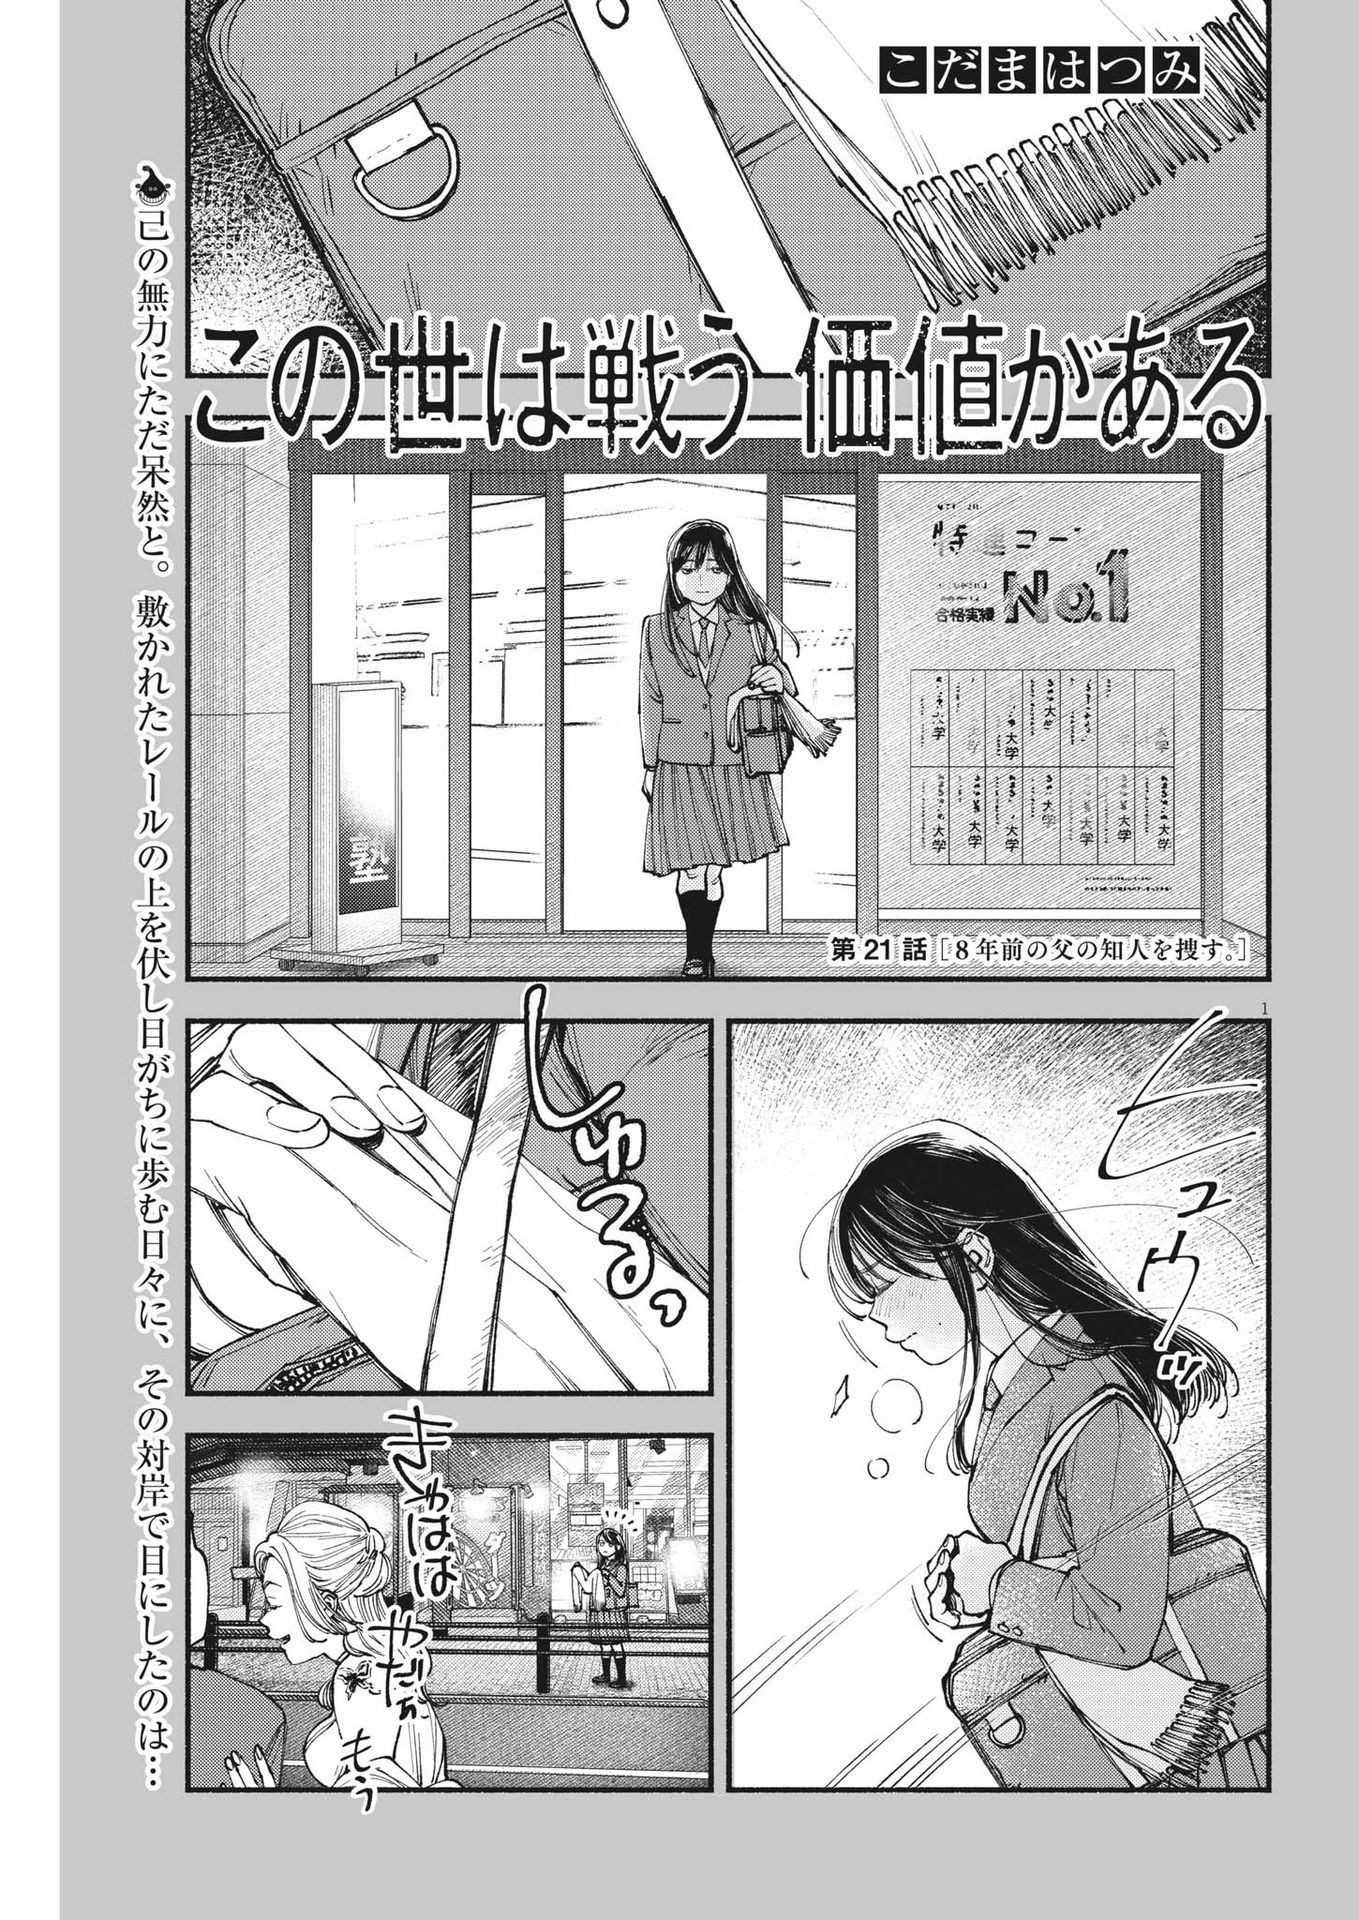 Konoyo wa Tatakau Kachi ga Aru  - Chapter 21 - Page 1